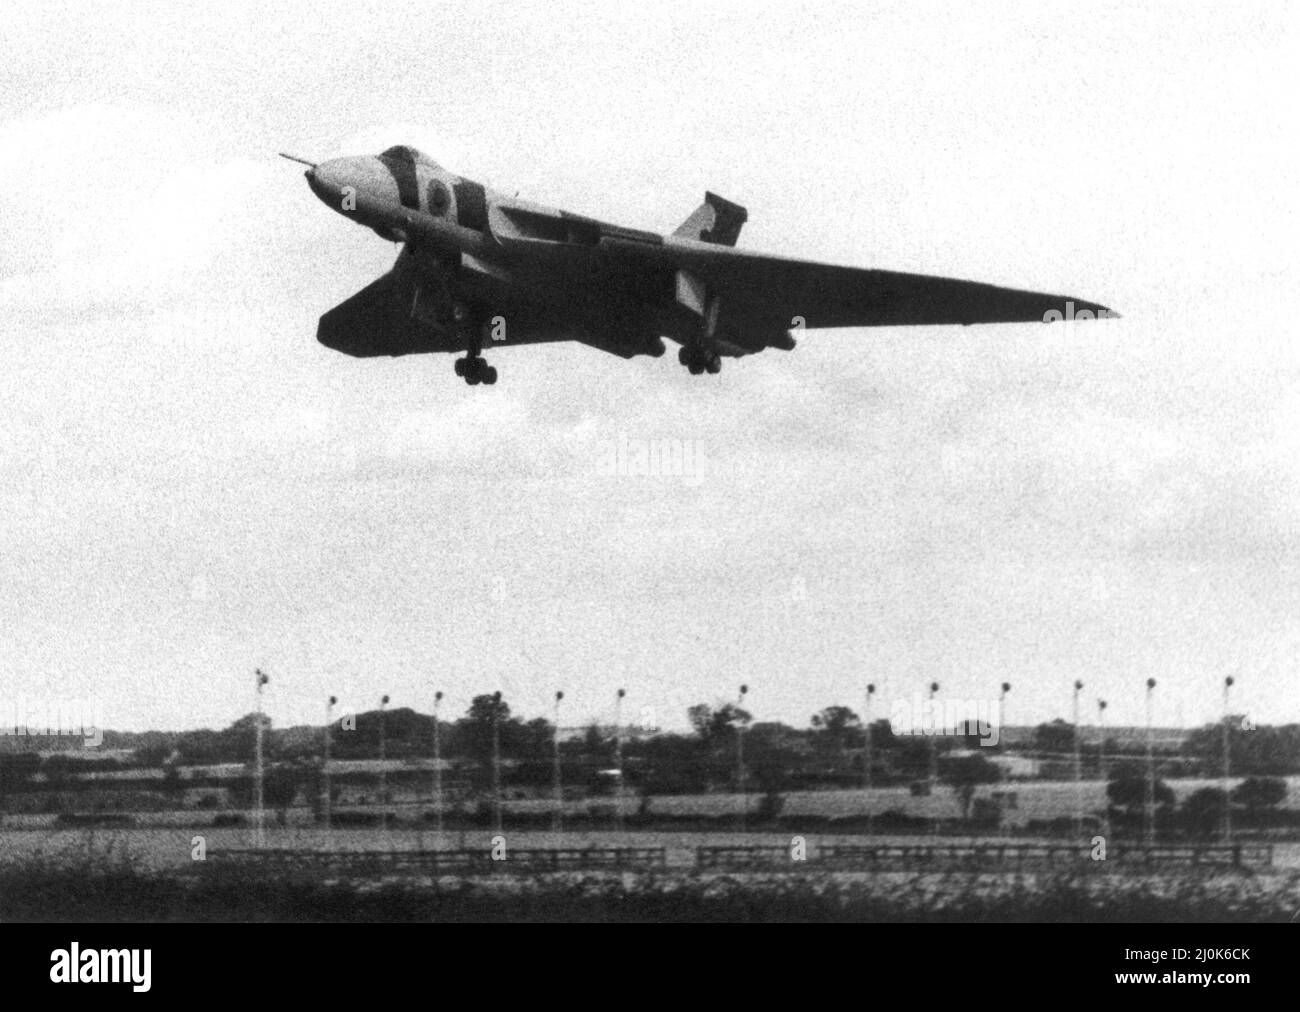 Un aviateur Vbomber RAF Avro Vulcan effectue un atterrissage d'urgence à l'aéroport de Newcastle. 23/09/1981 Banque D'Images